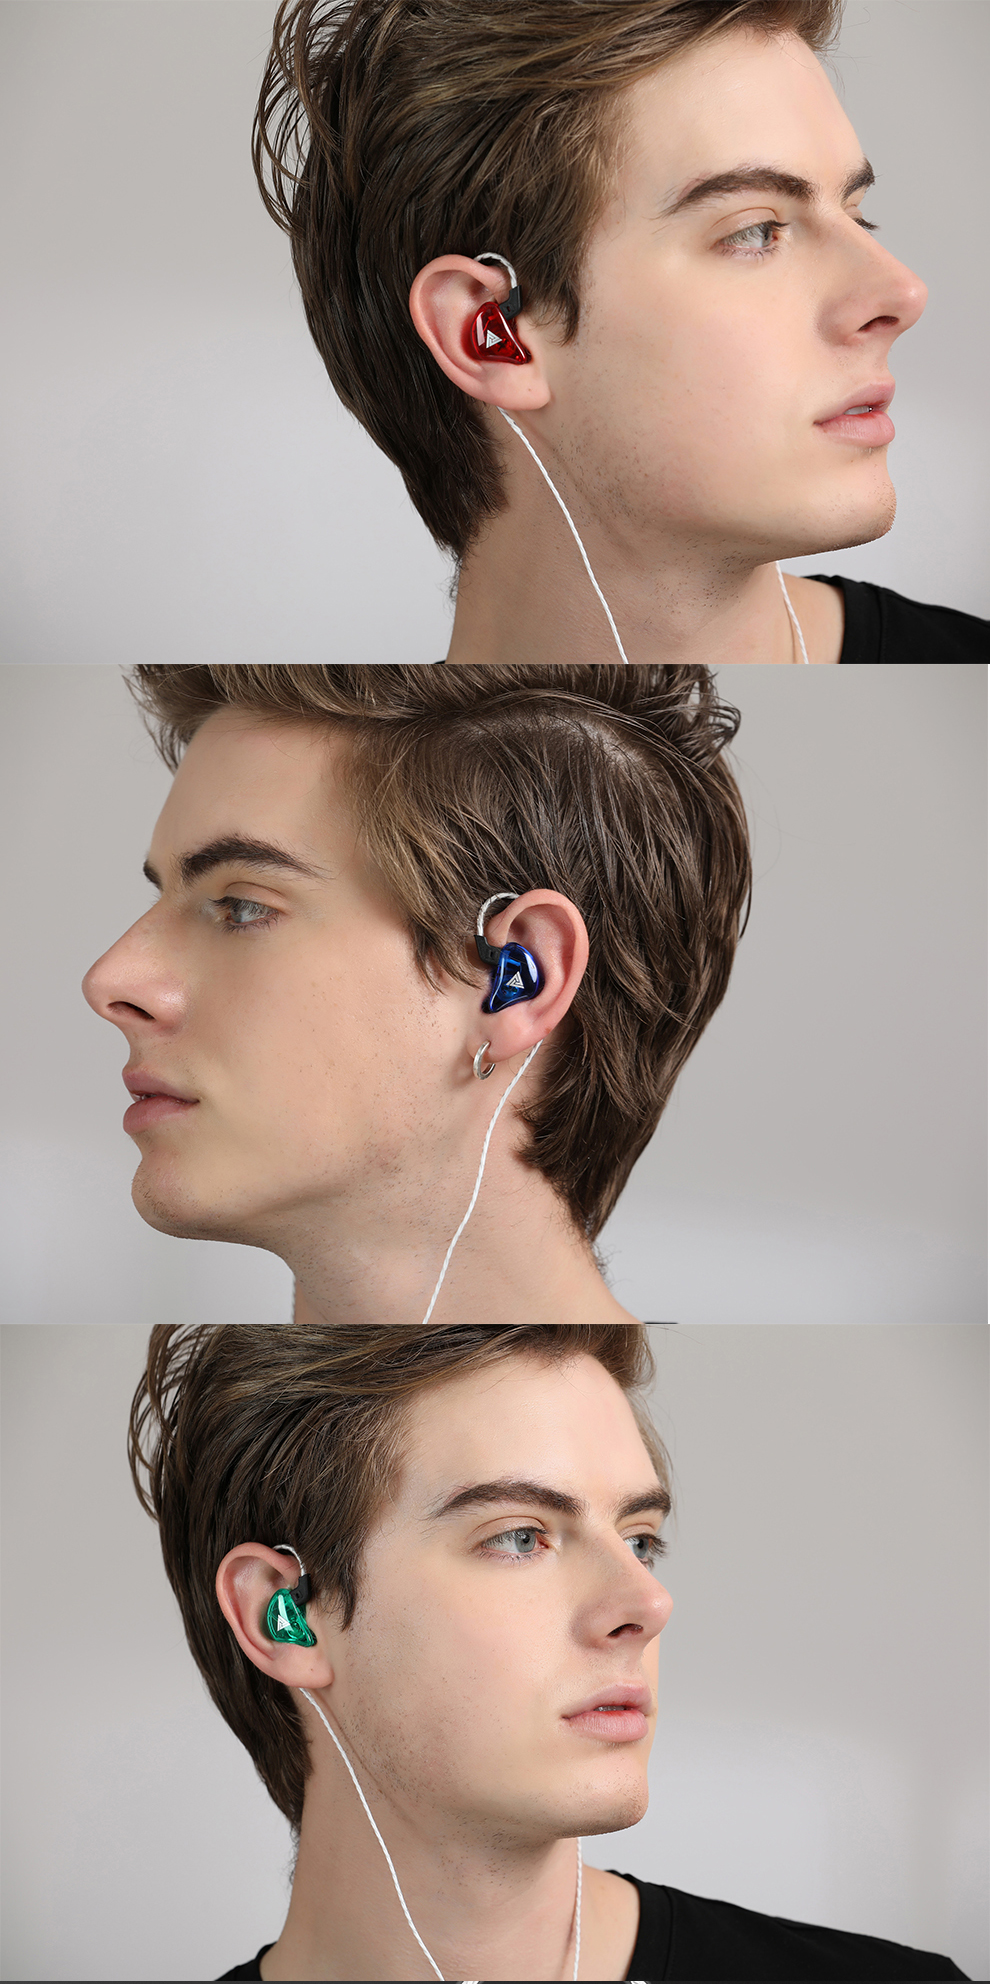 มุมมองเพิ่มเติมของสินค้า QKZ หูฟัง CK5 หูฟังใส่วิ่ง in ear Headphones คุณภาพดีงาม เสียงดี เบสแน่น โดนใจคนฟังเพลง HI-FI ไฮไฟ คล้องหู หูฟังอินเอียร์ สายยาว 1.2 เมตร